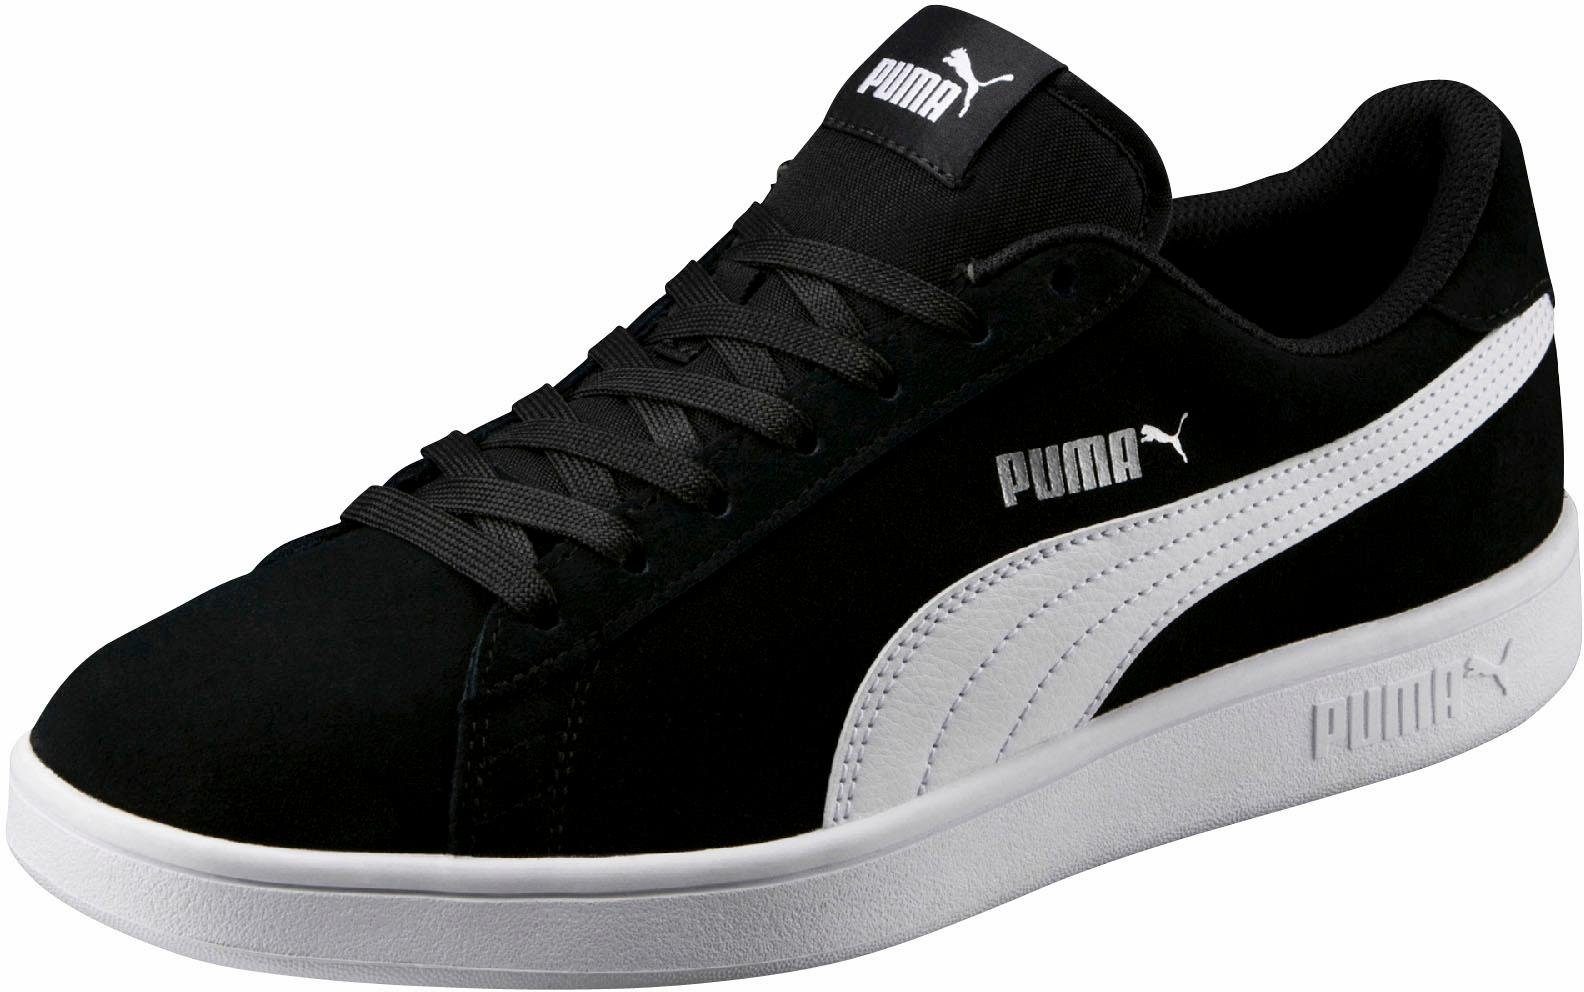 PUMA »Puma Smash v2« Sneaker online kaufen | OTTO